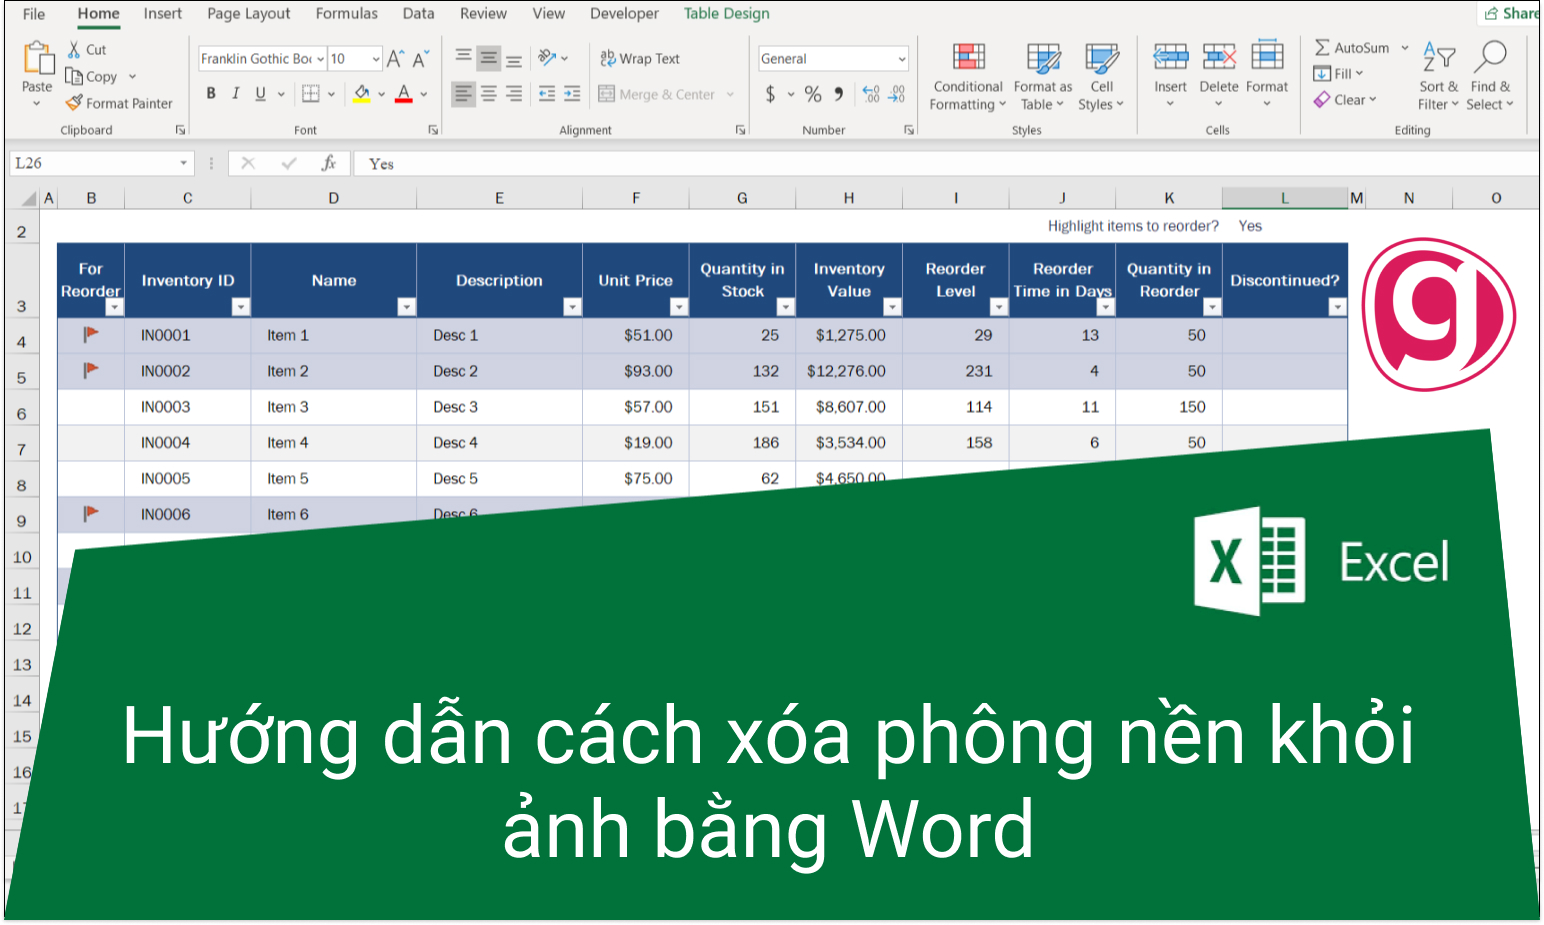 Microsoft Word Xóa nền:
Microsoft Word không chỉ là công cụ để soạn thảo văn bản, nó còn có thể giúp bạn xóa phông nền trong ảnh. Không cần phải tải xuống các chương trình phục vụ chỉnh sửa ảnh, bạn có thể sử dụng Microsoft Word để xóa phông nền một cách đơn giản.